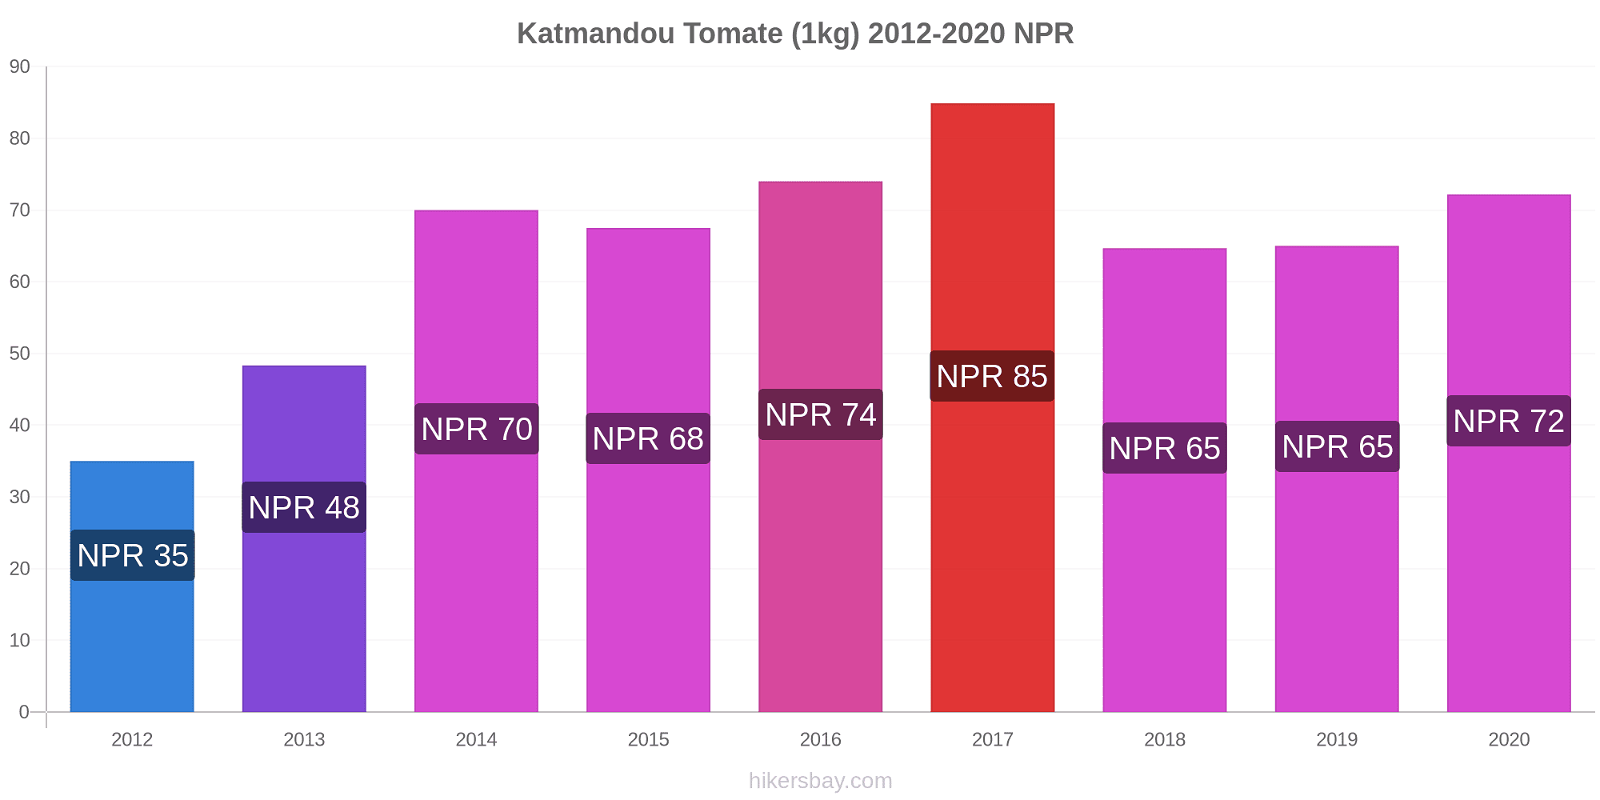 Katmandou changements de prix Tomate (1kg) hikersbay.com